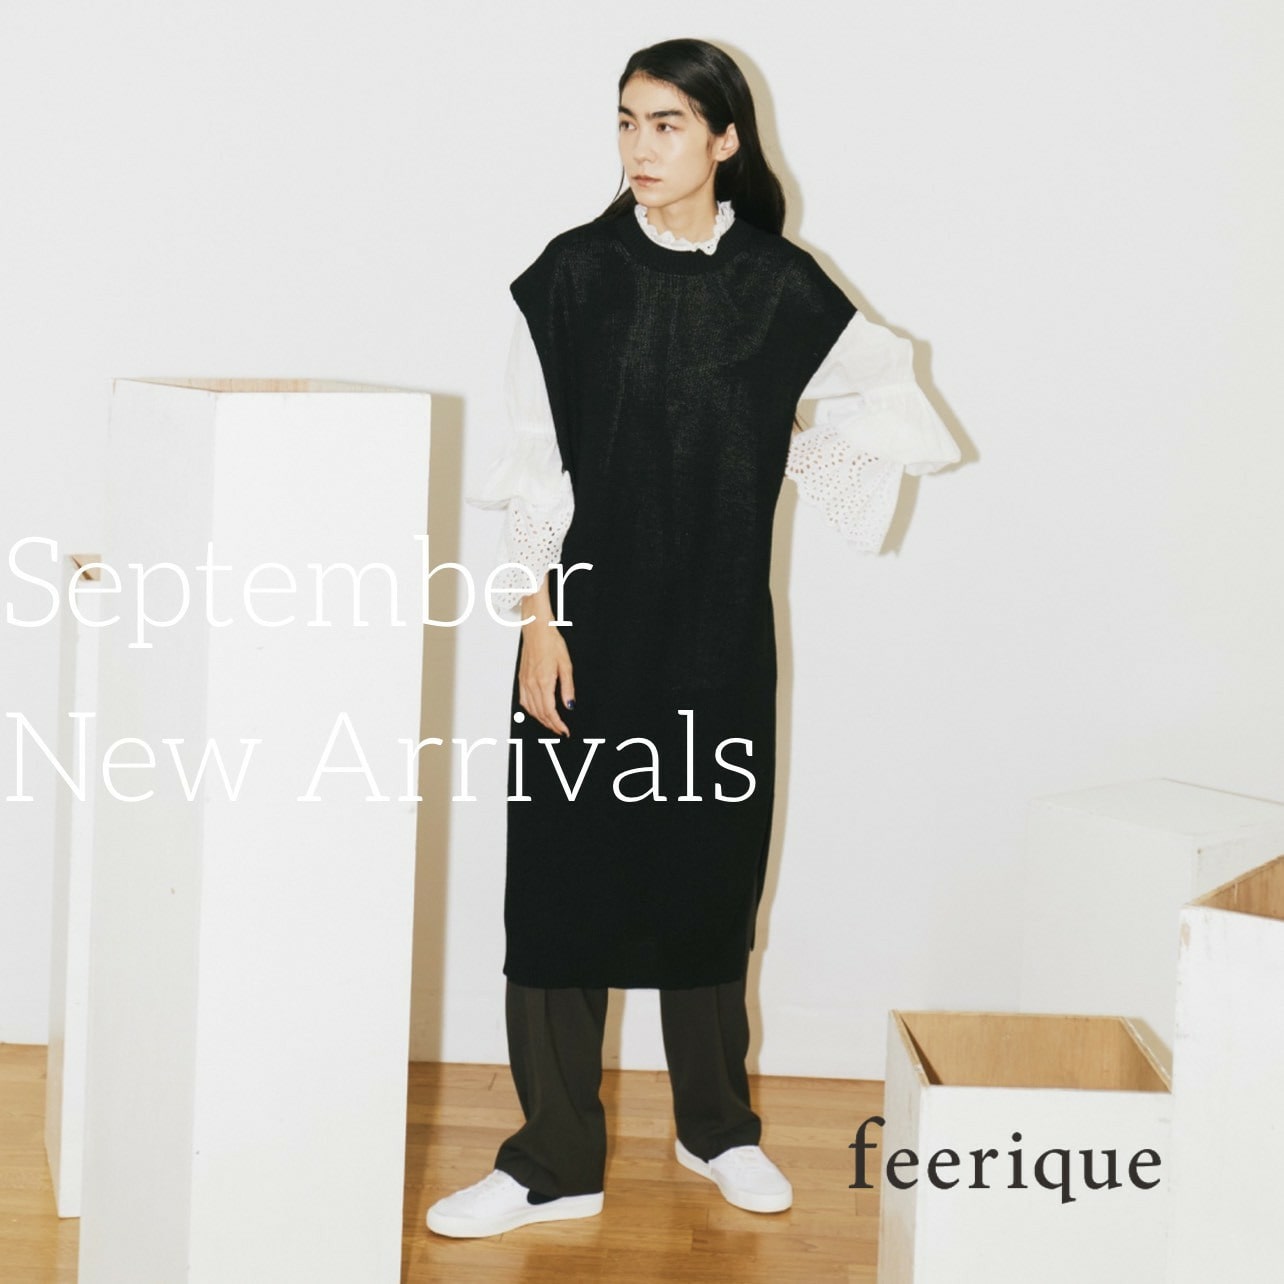 【feerique】NEW ARRIVALS /SEPTEMBER